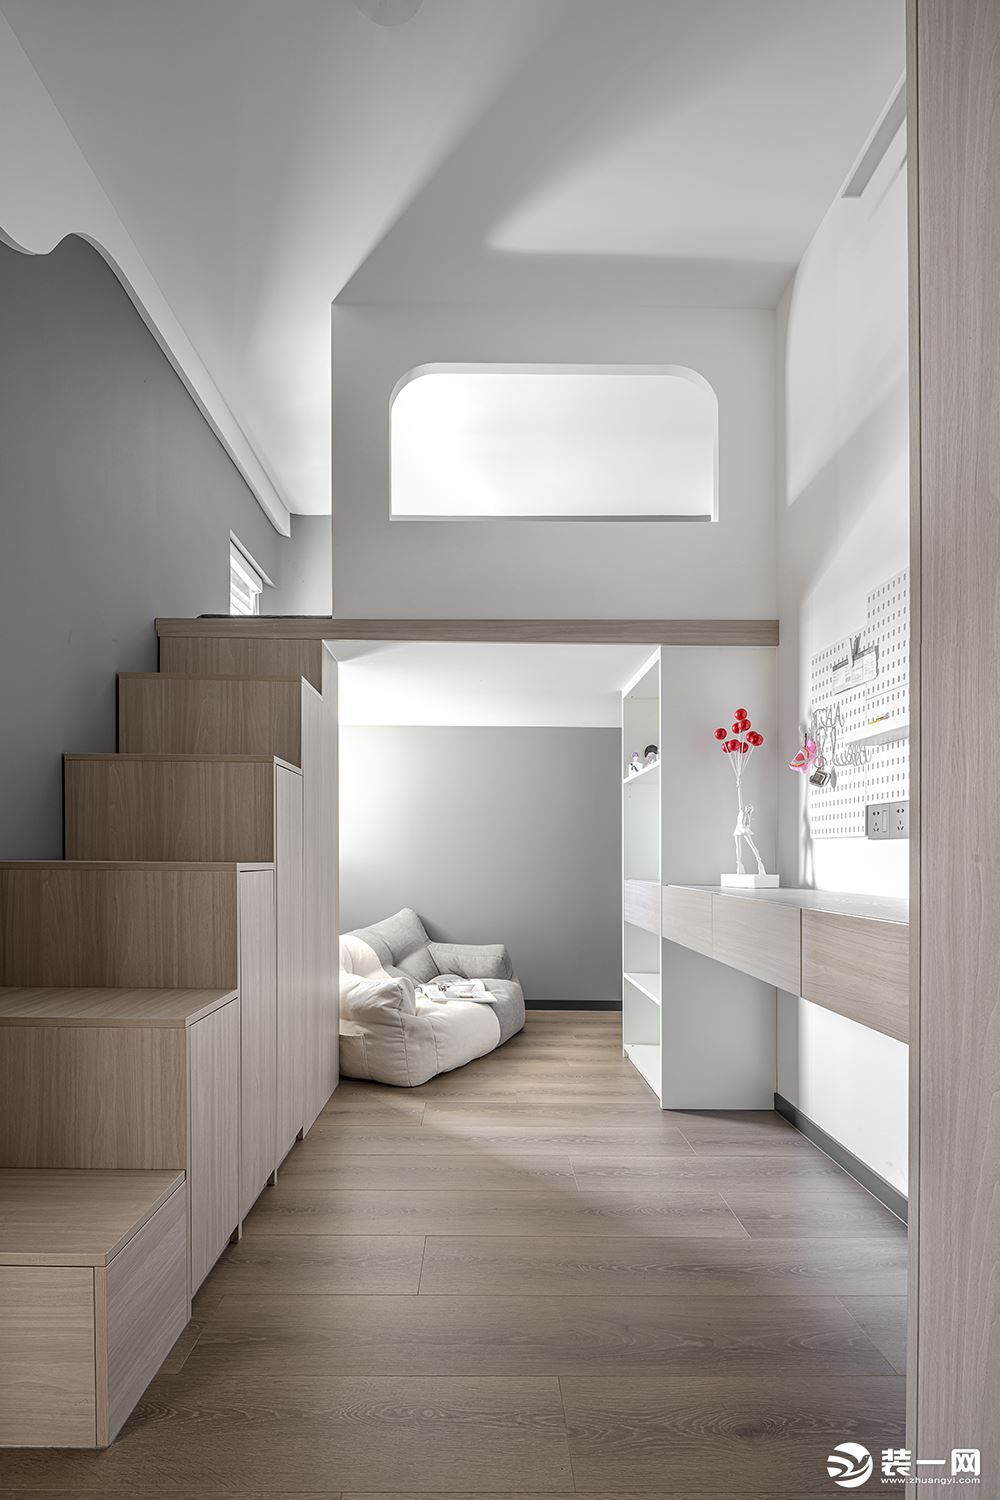 设计师按小阁楼的设计模式规划了二层的睡眠区，满足一个拥有属于自己私密小天地的小心愿。